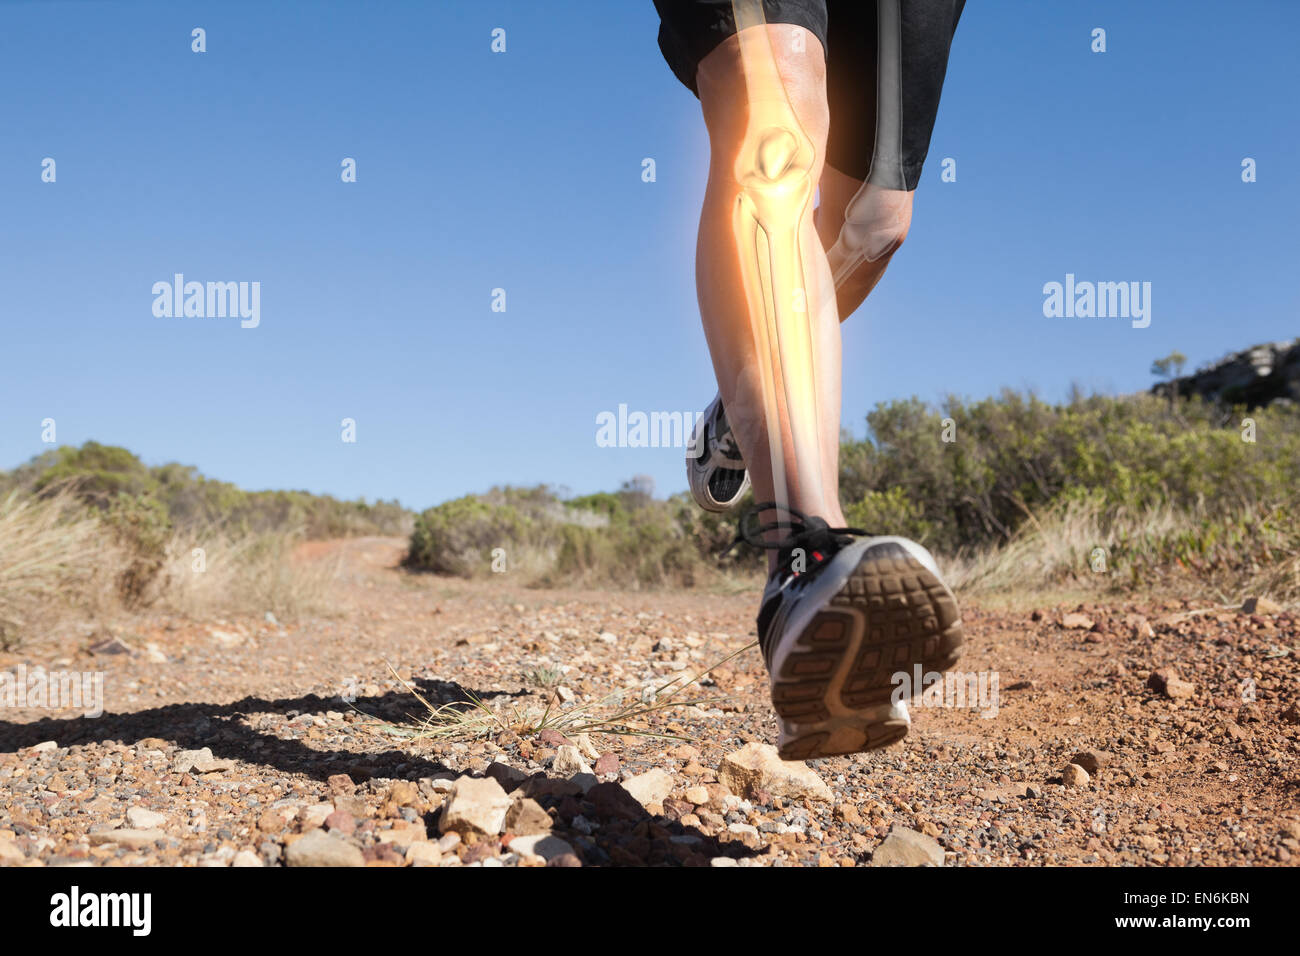 Les os des jambes en surbrillance de l'homme jogging Banque D'Images